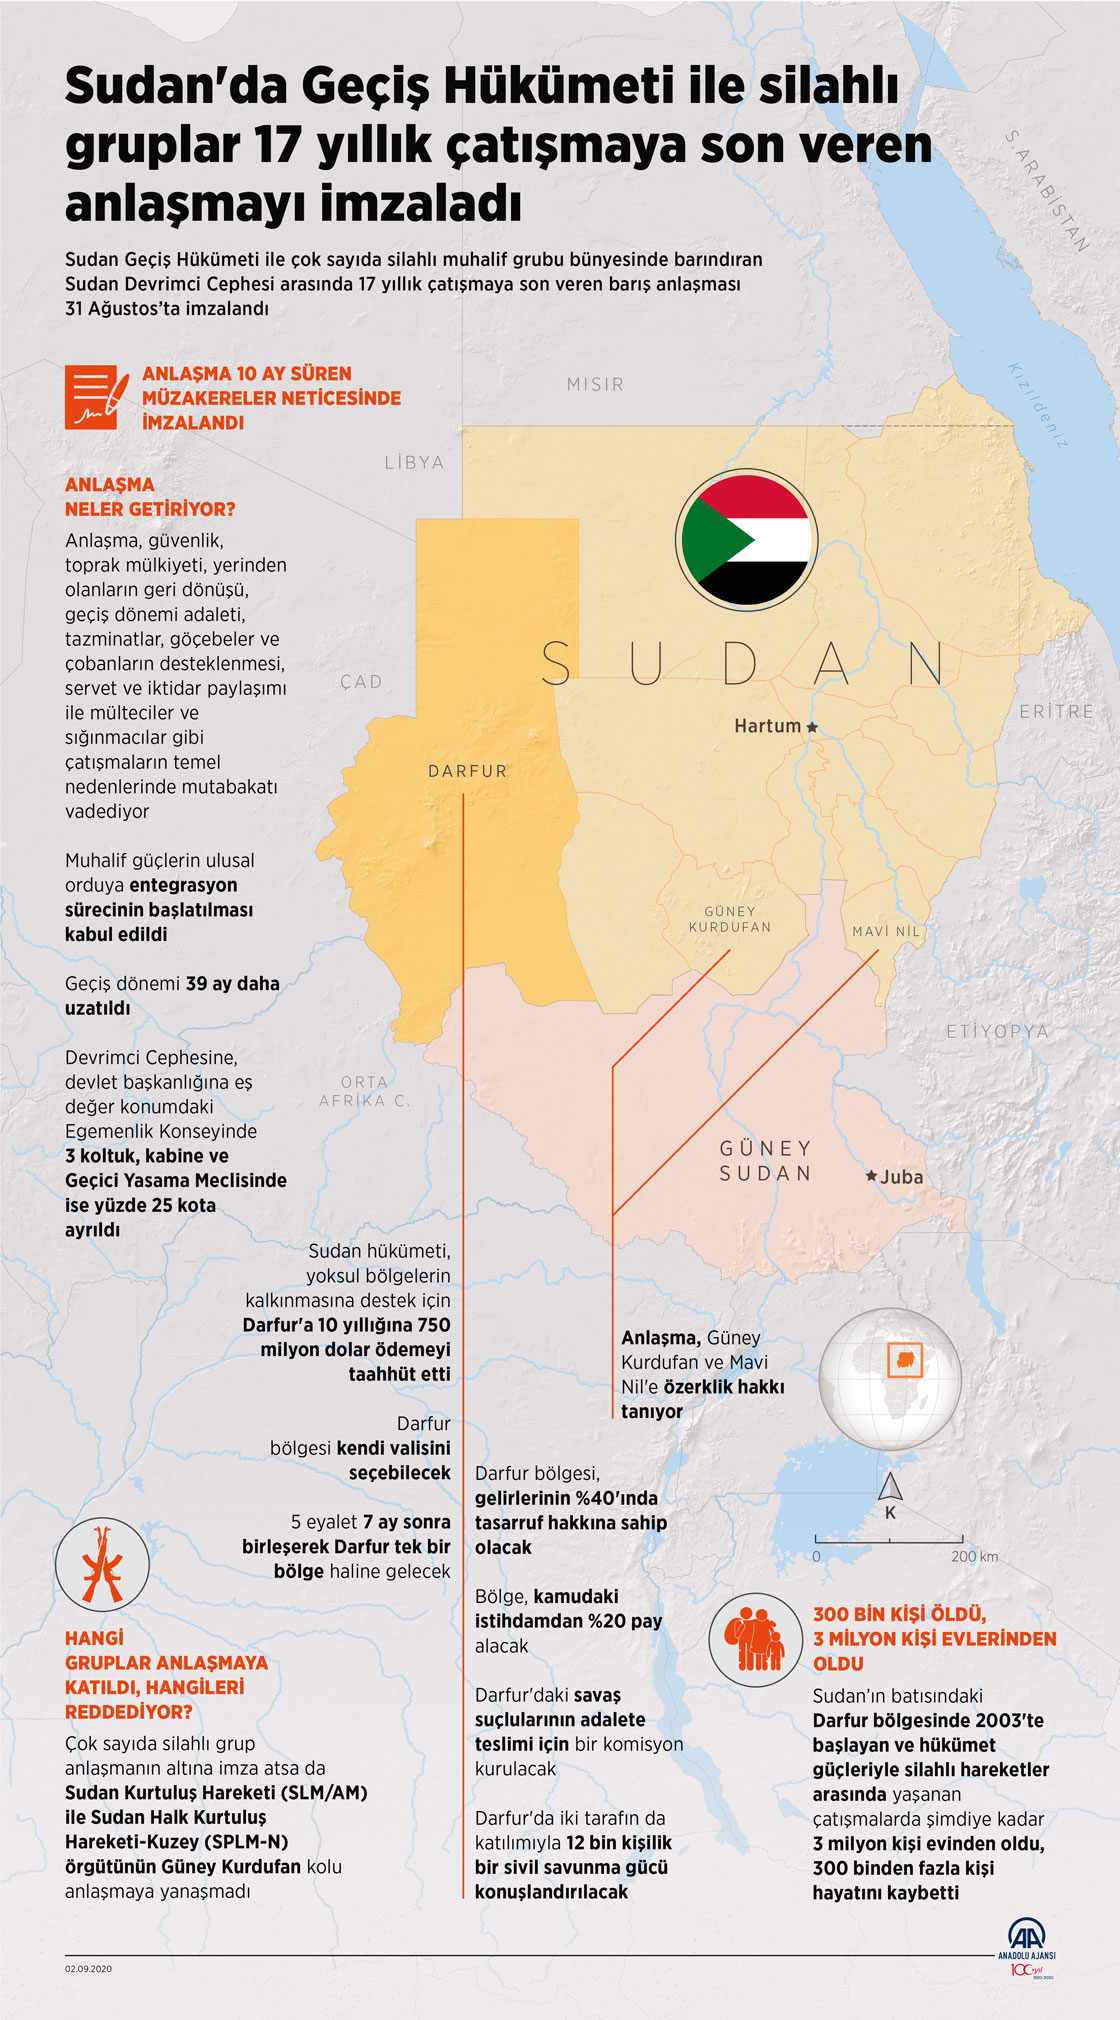 Sudan'da Geçiş Hükümeti ile silahlı gruplar 17 yıllık çatışmaya son veren anlaşmayı imzaladı